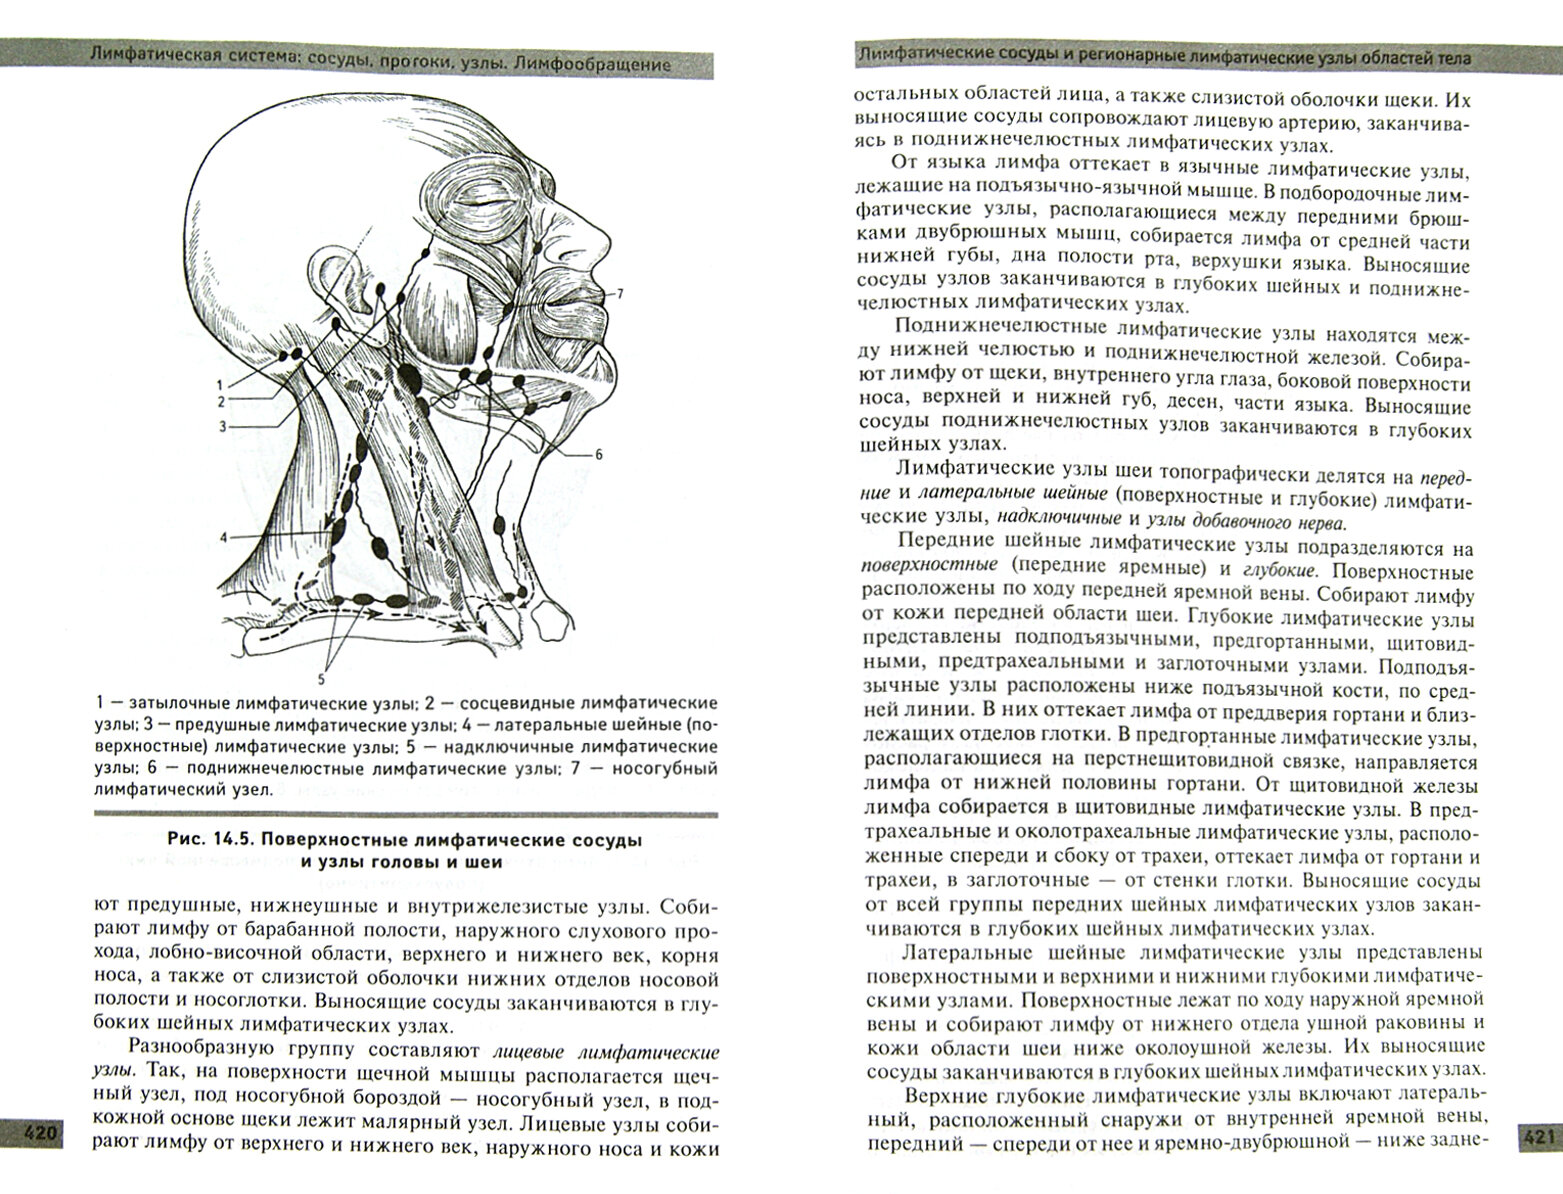 Анатомия и физиология человека: учебное пособие - фото №2